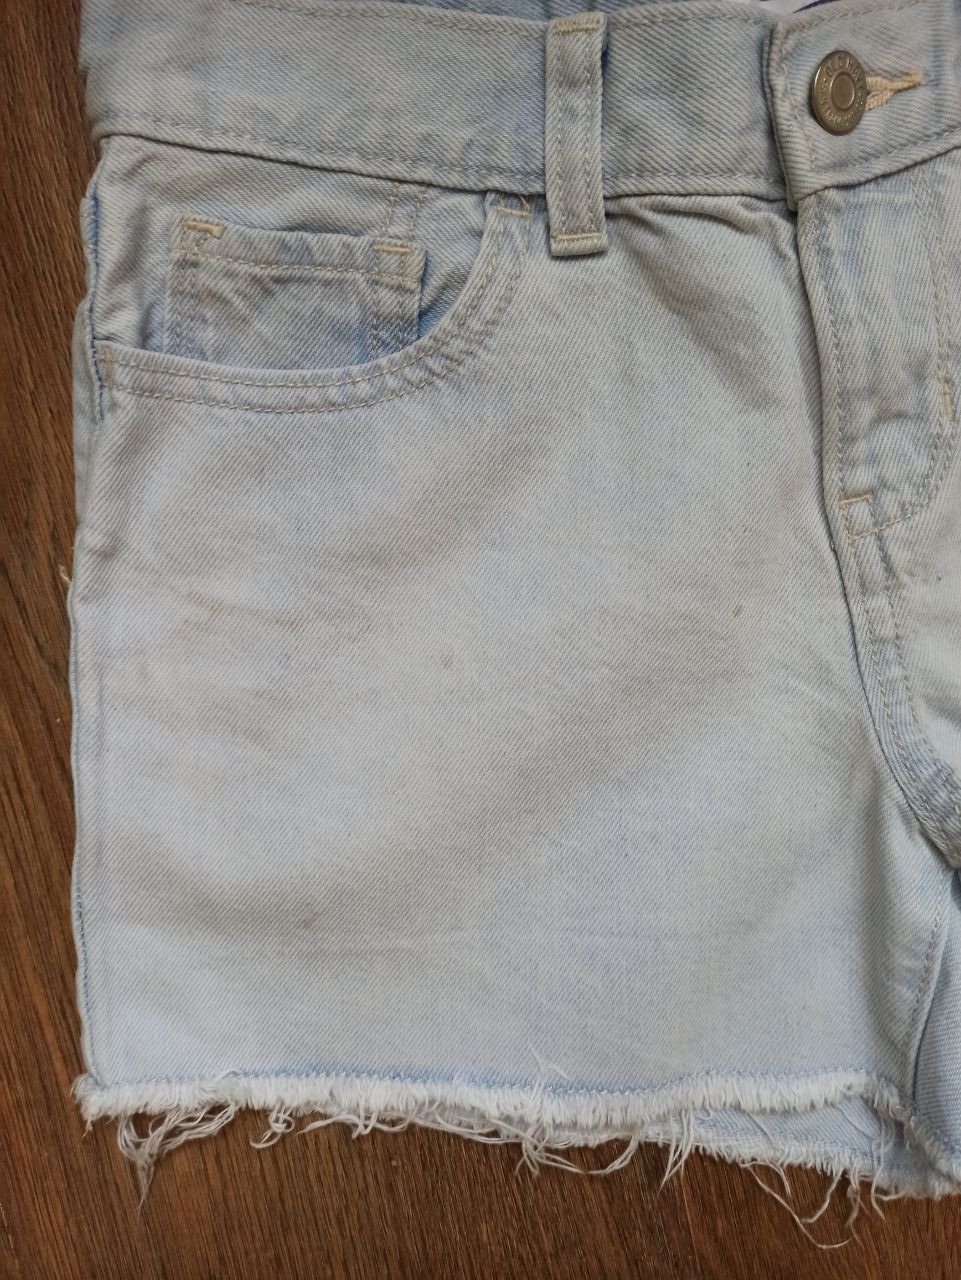 Продам джинсовы шорты на девочку фирмы OLD NAVY 10-12  лет.